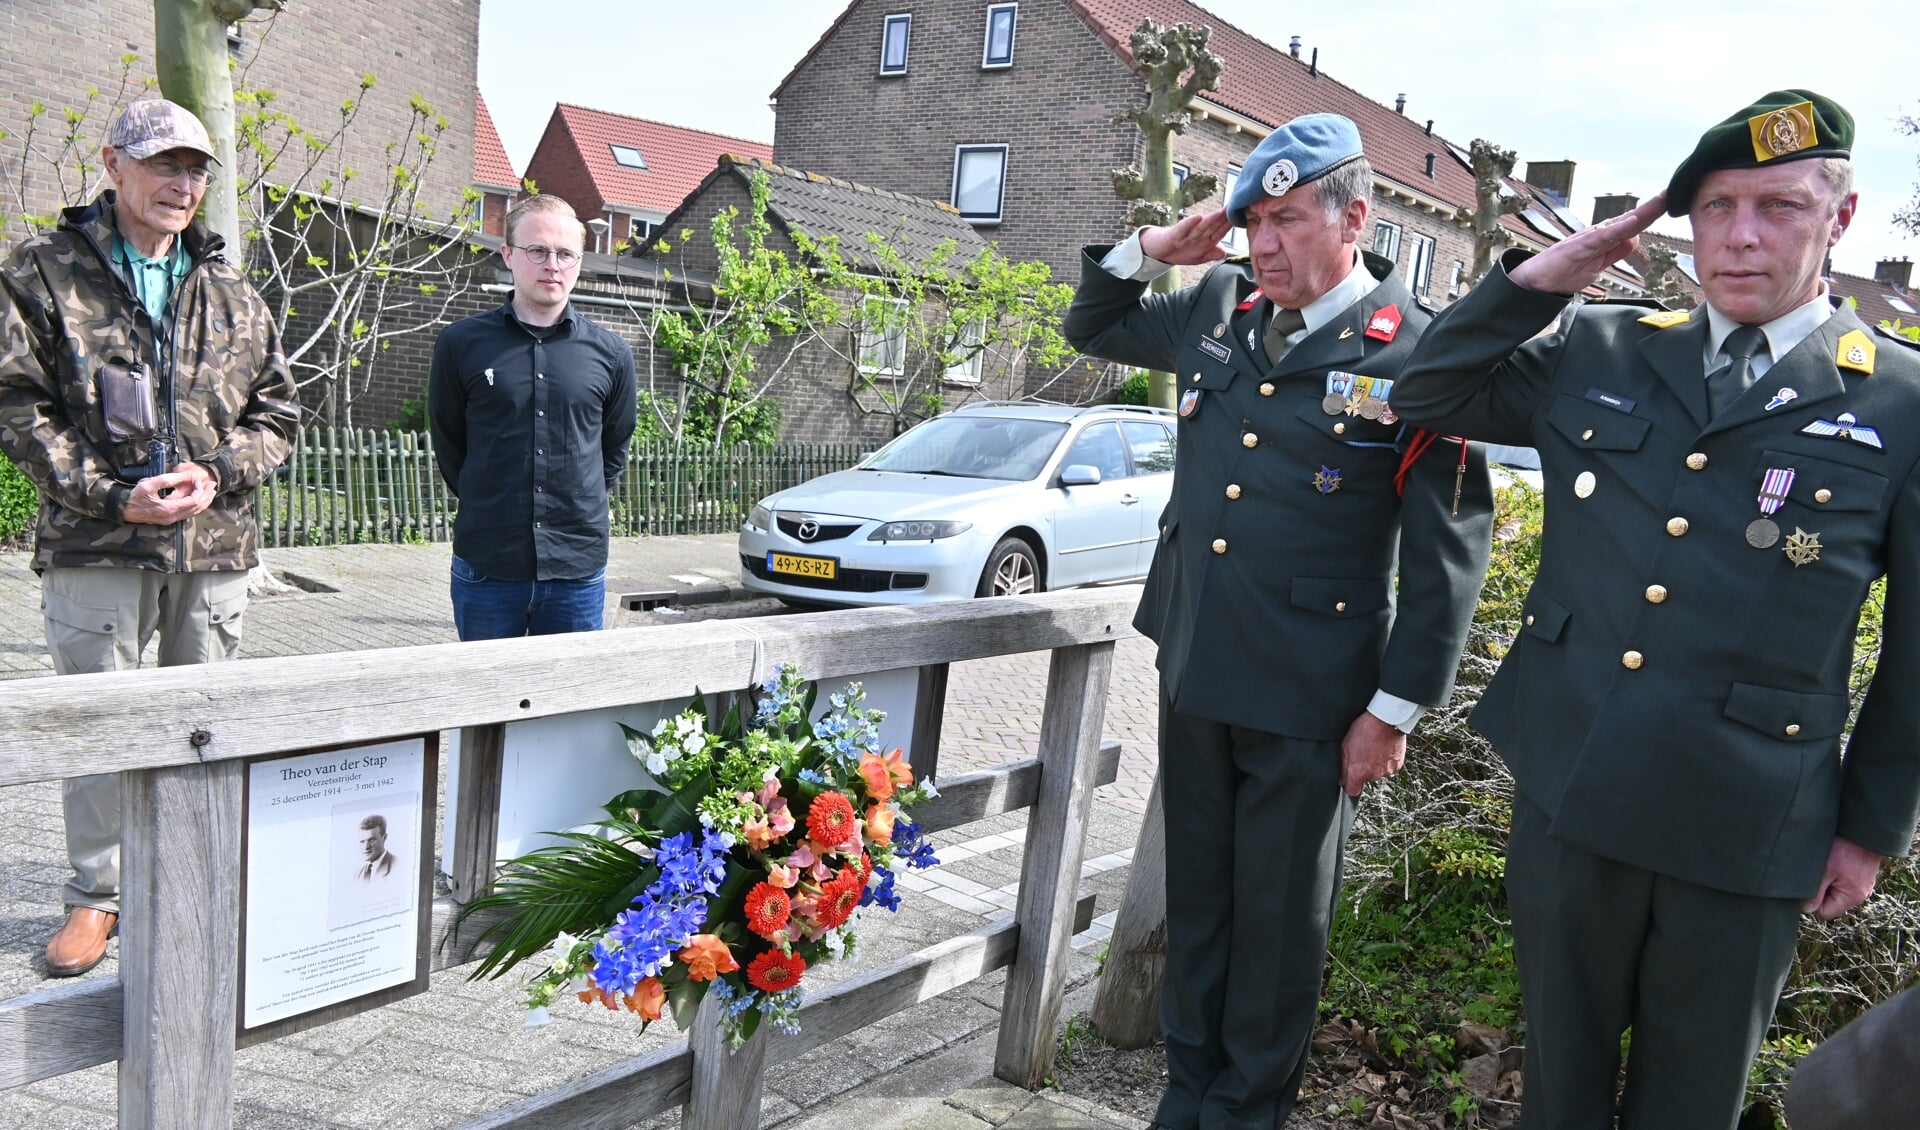  Veteranen Joop Alsemgeest en Pepijn Arkesteijn brengen een eregroet. Op de achtergrond links Kees van Paassen en Nick Koene (4/5 mei comité). 